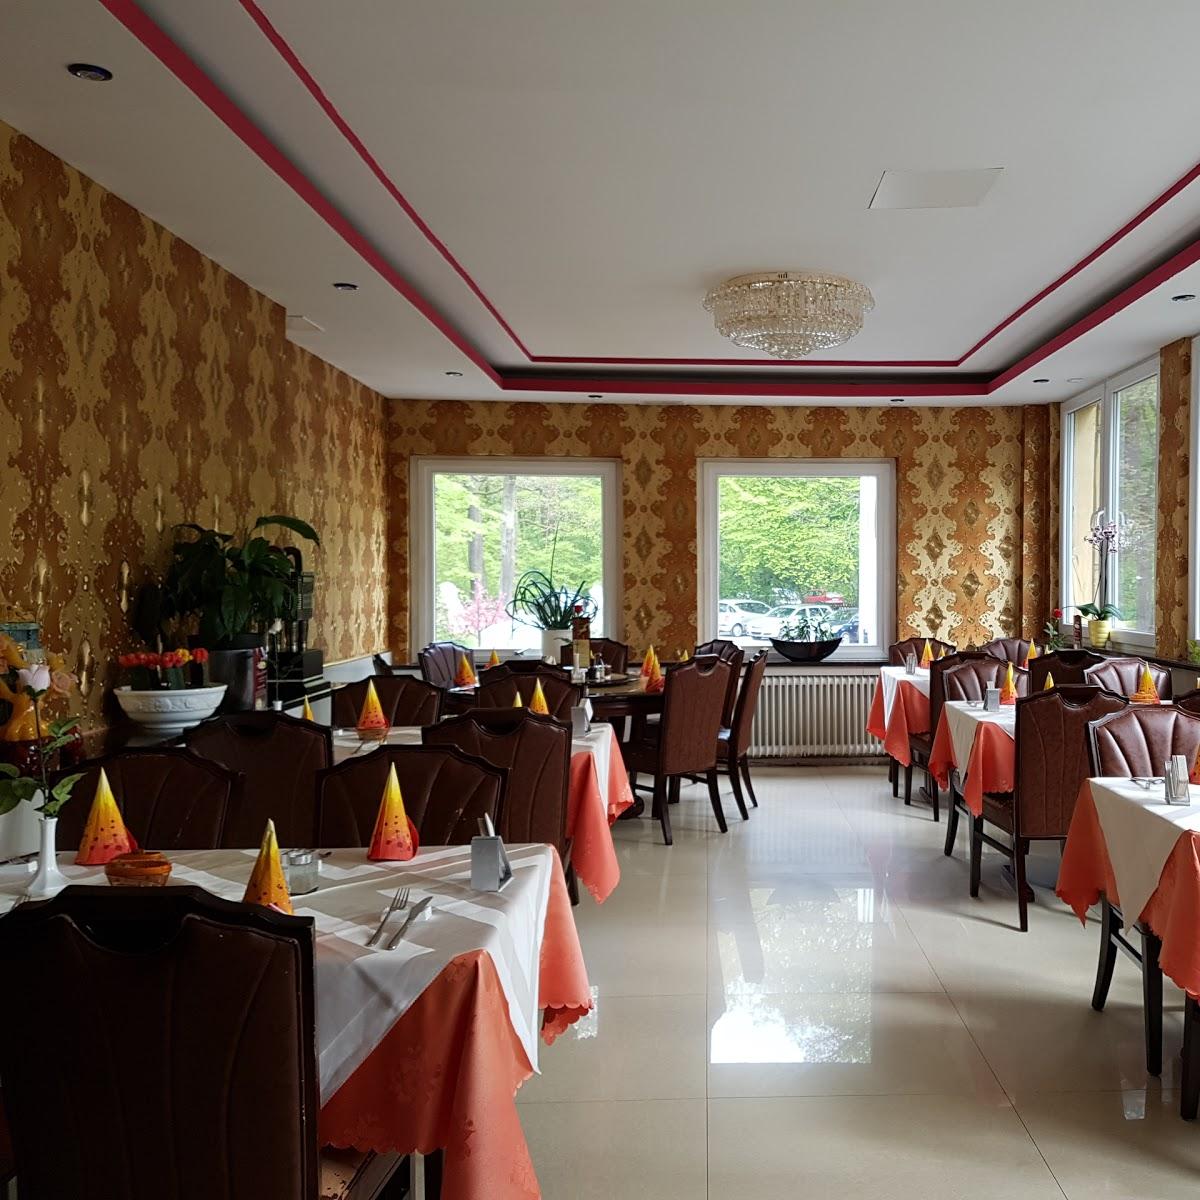 Restaurant "Kaiser Garten" in Troisdorf